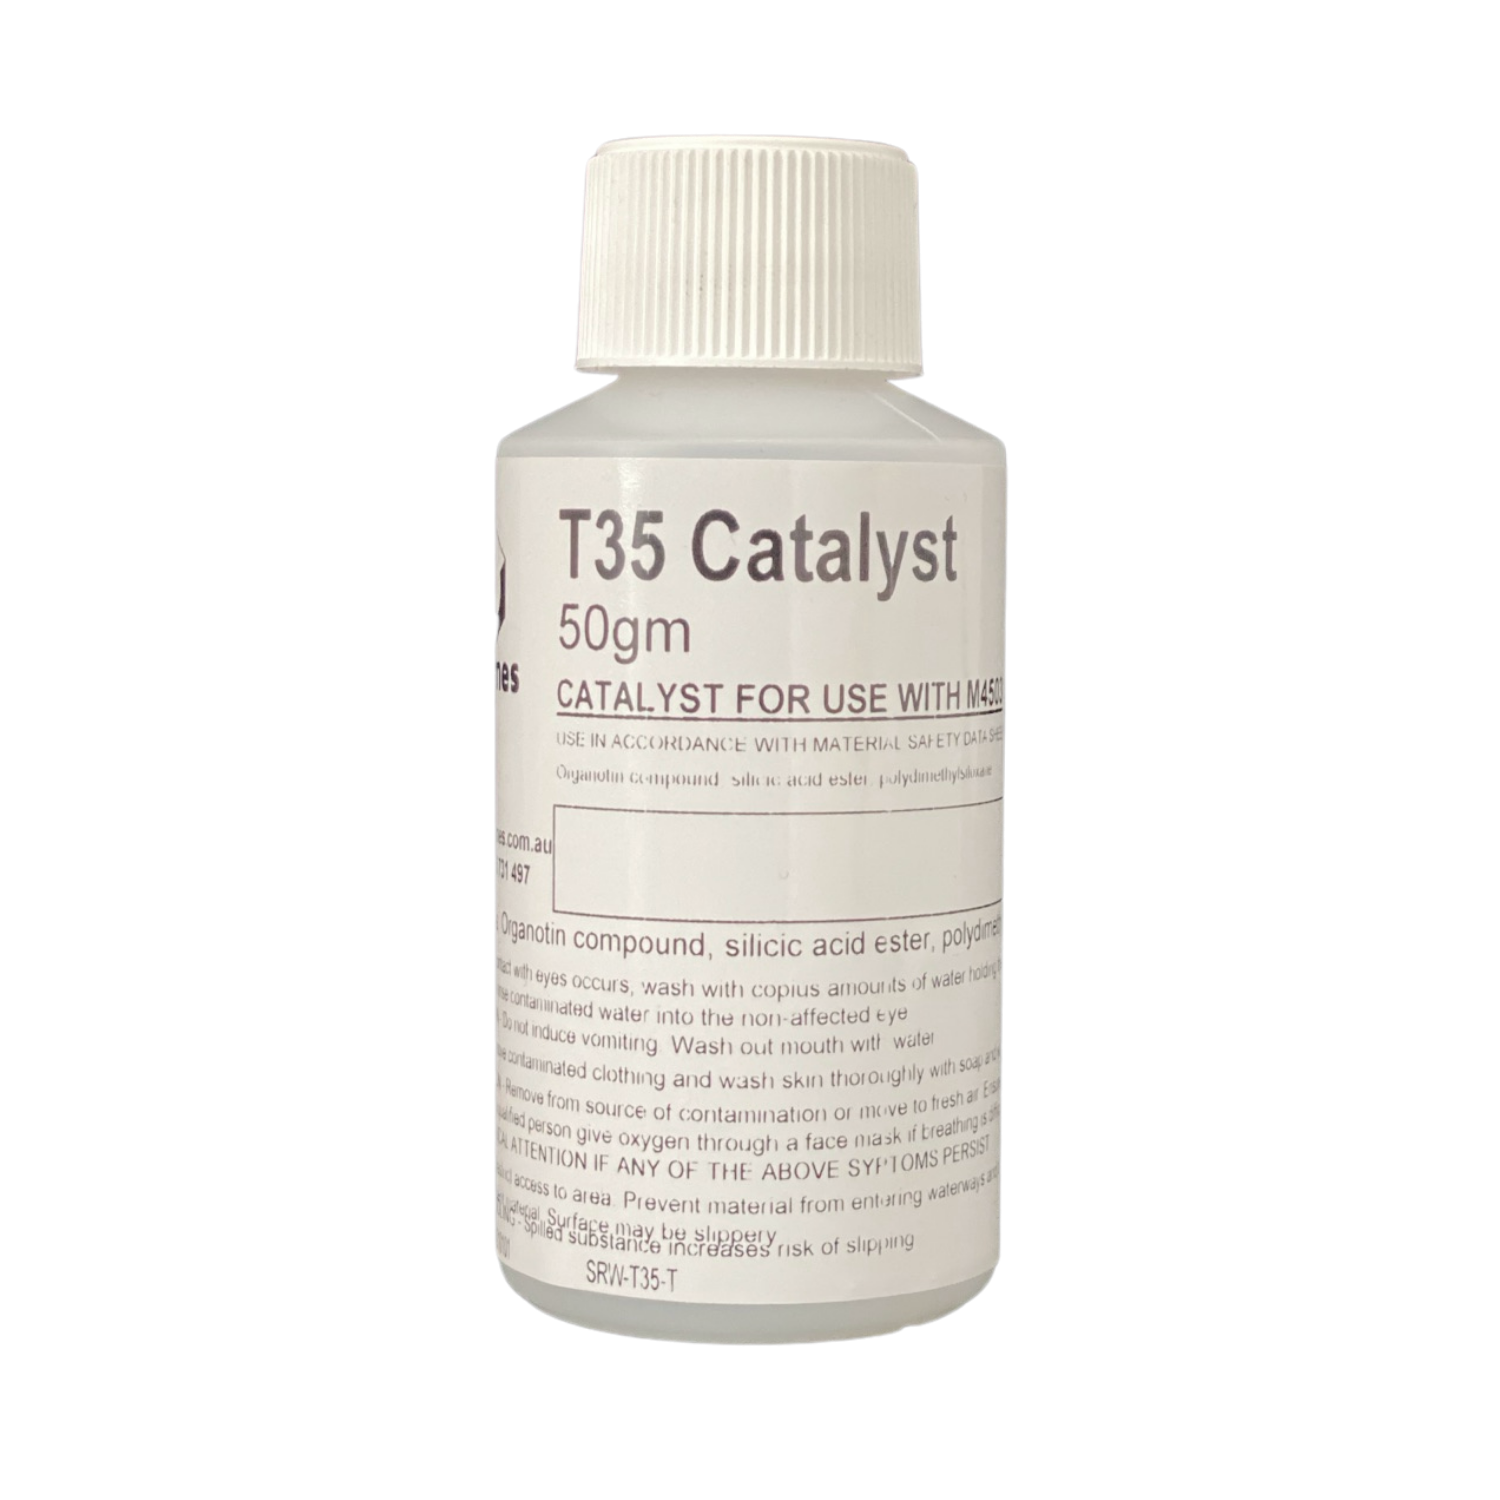 T35 Catalyst